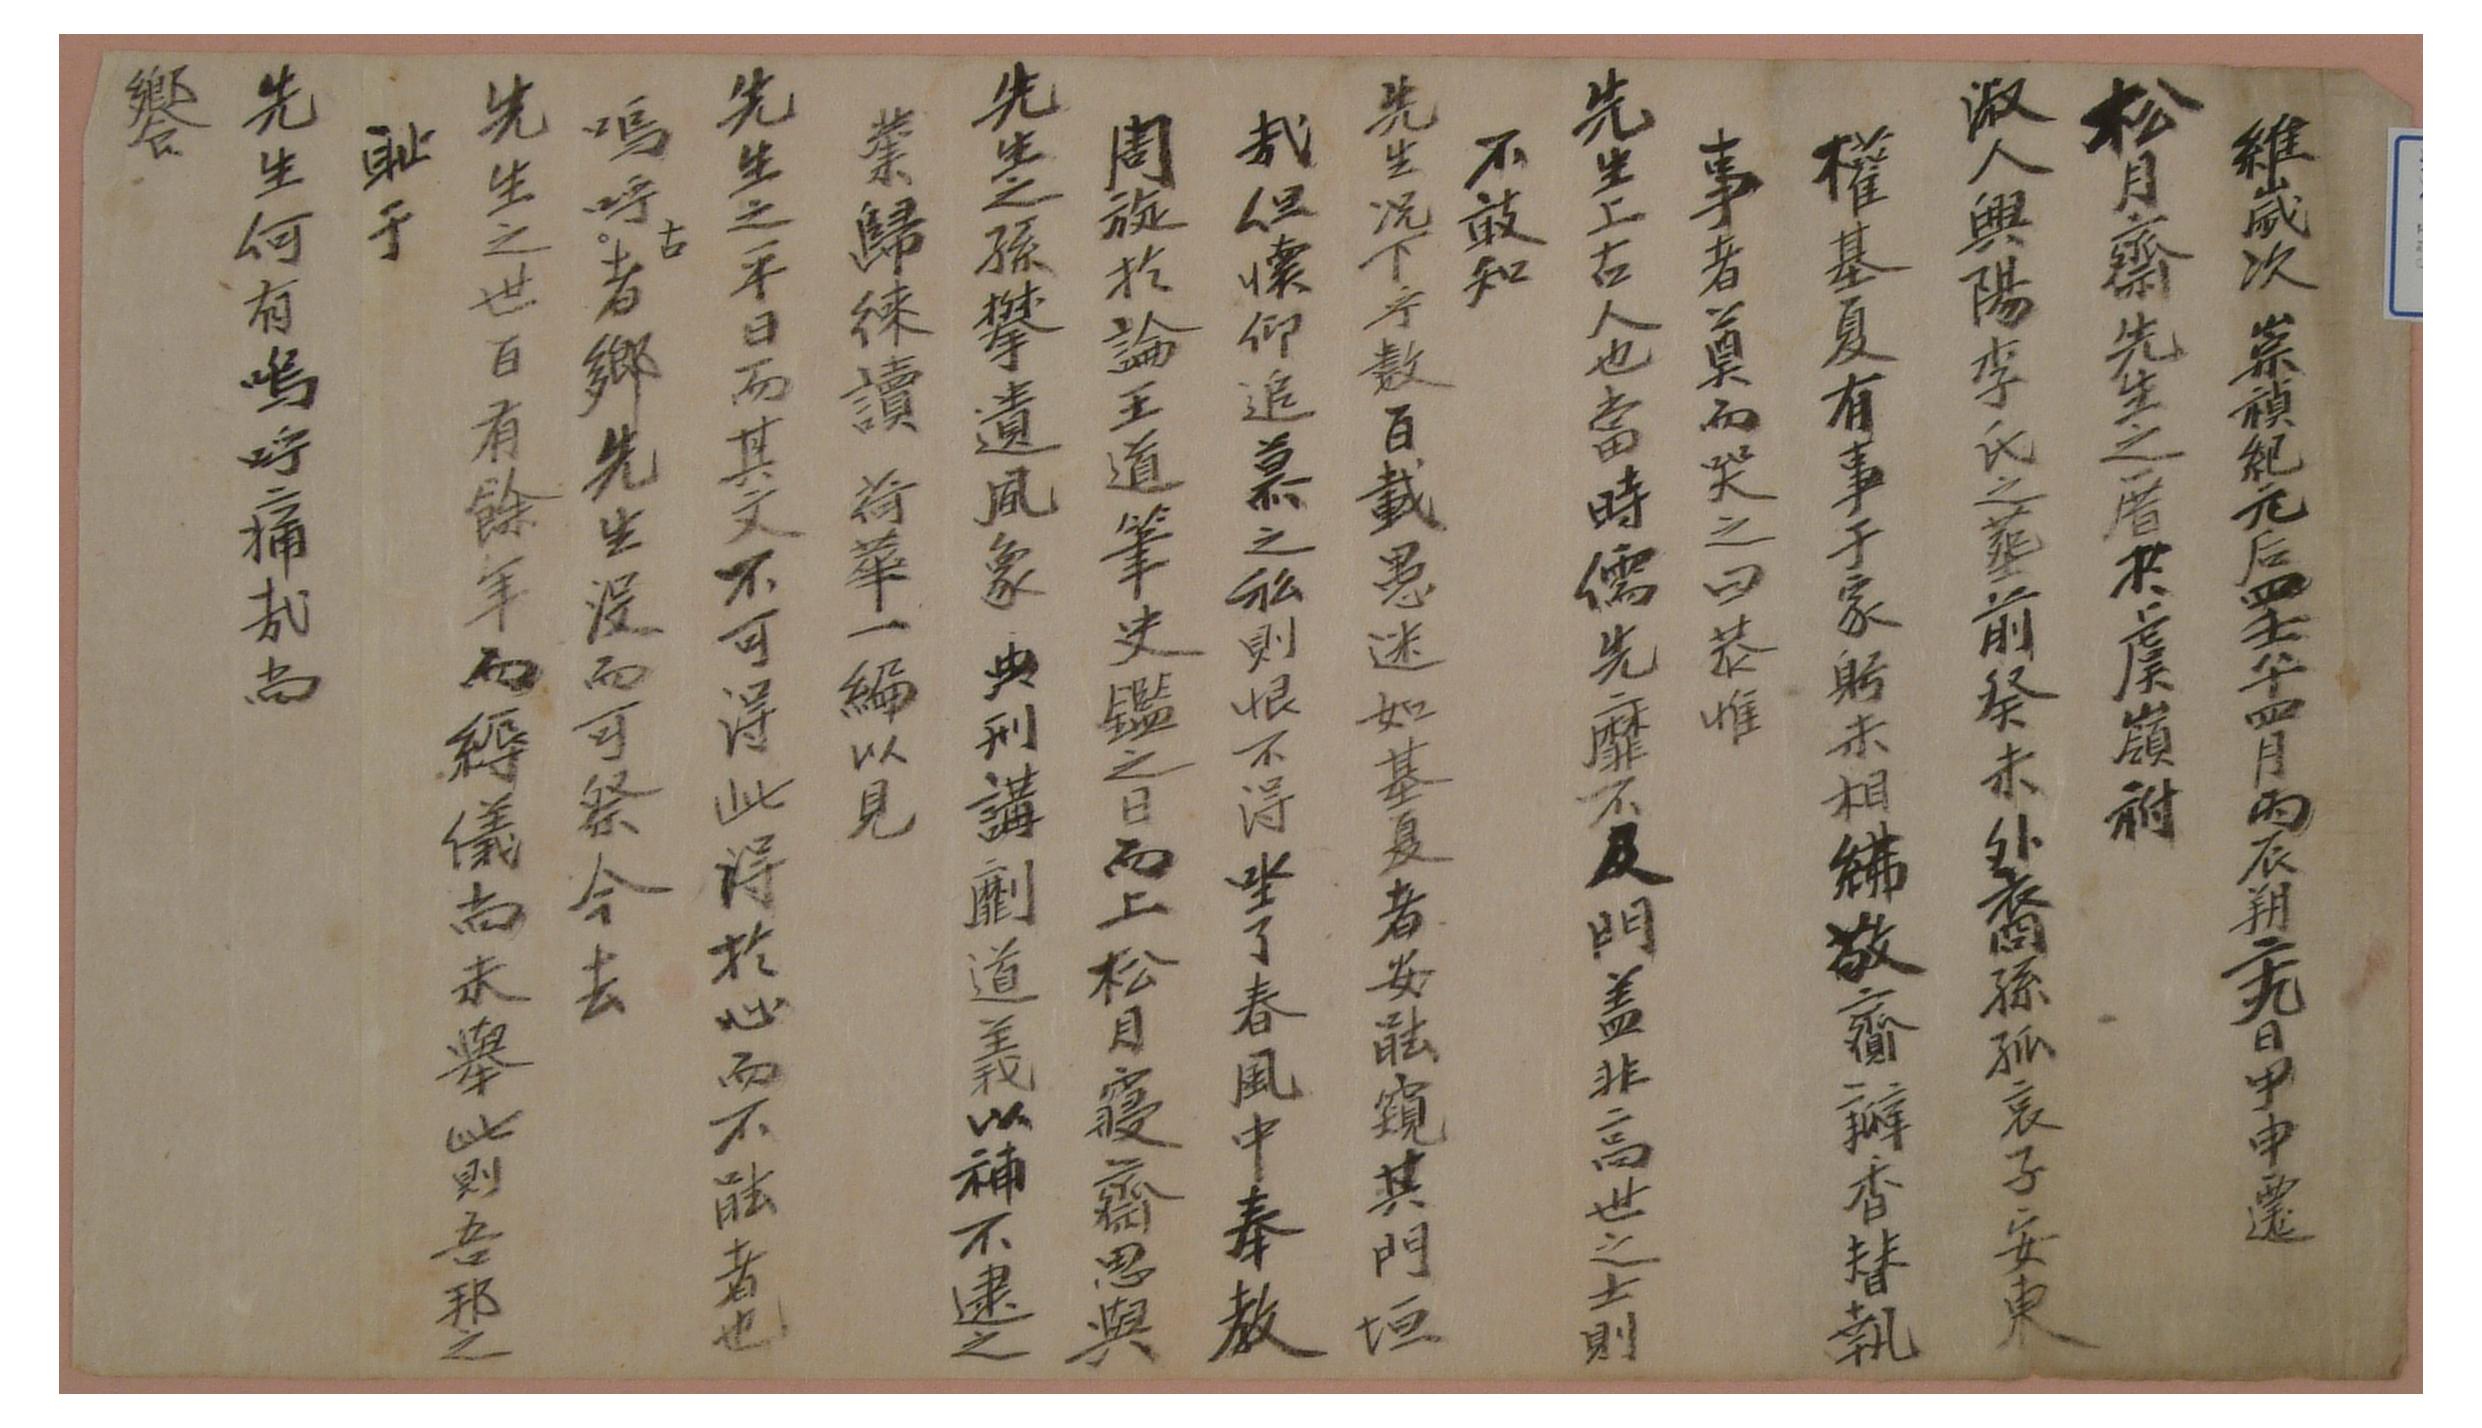 1822년 권기하가 송월재 선생을 이장할 때 올린 제문